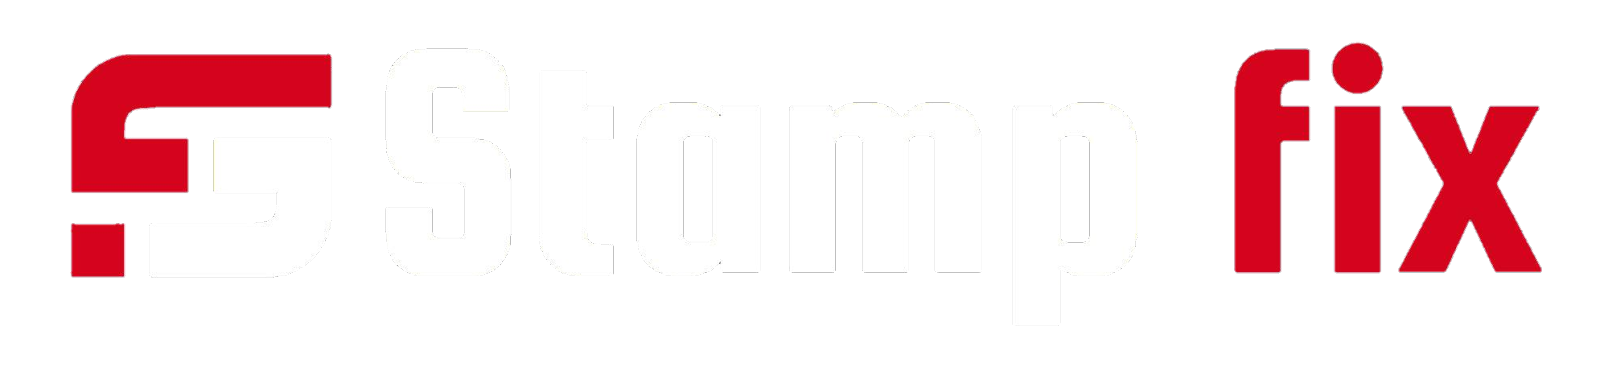 Stampfix .com logo